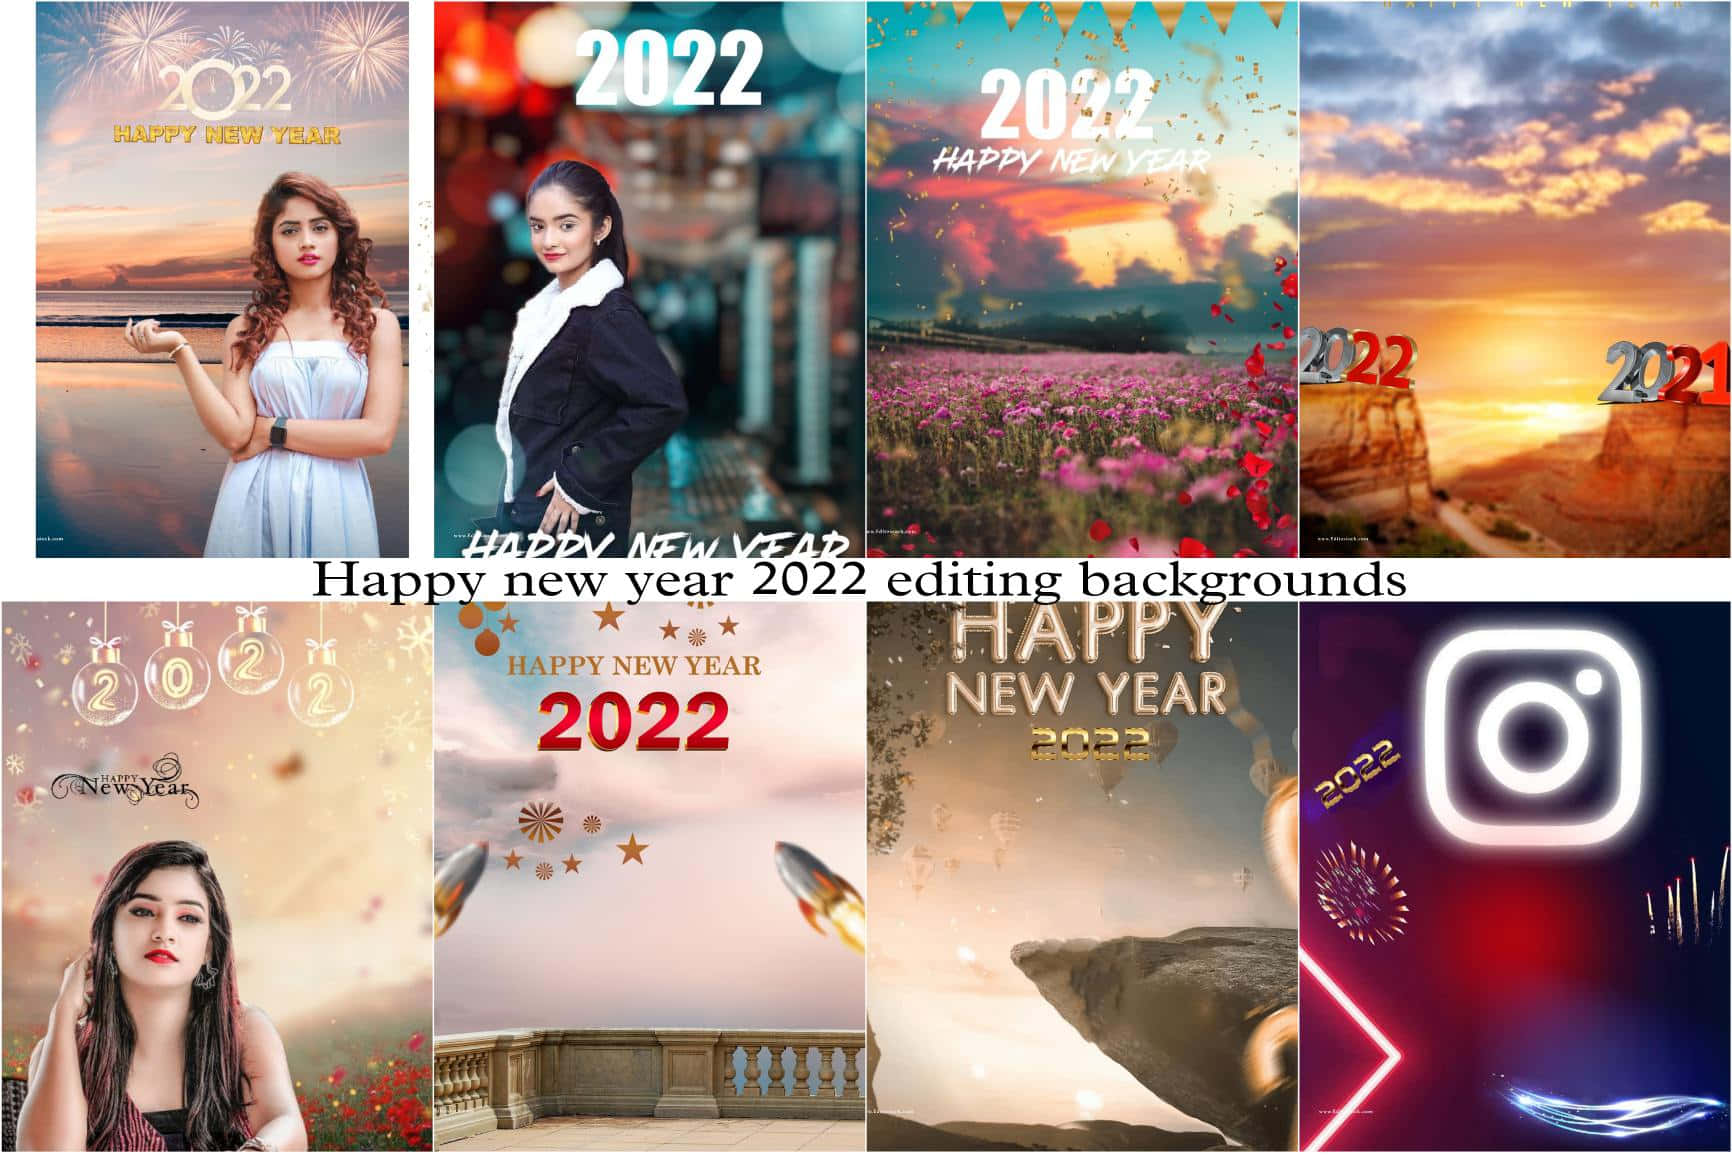 ¡bienvenidoal Año 2022!